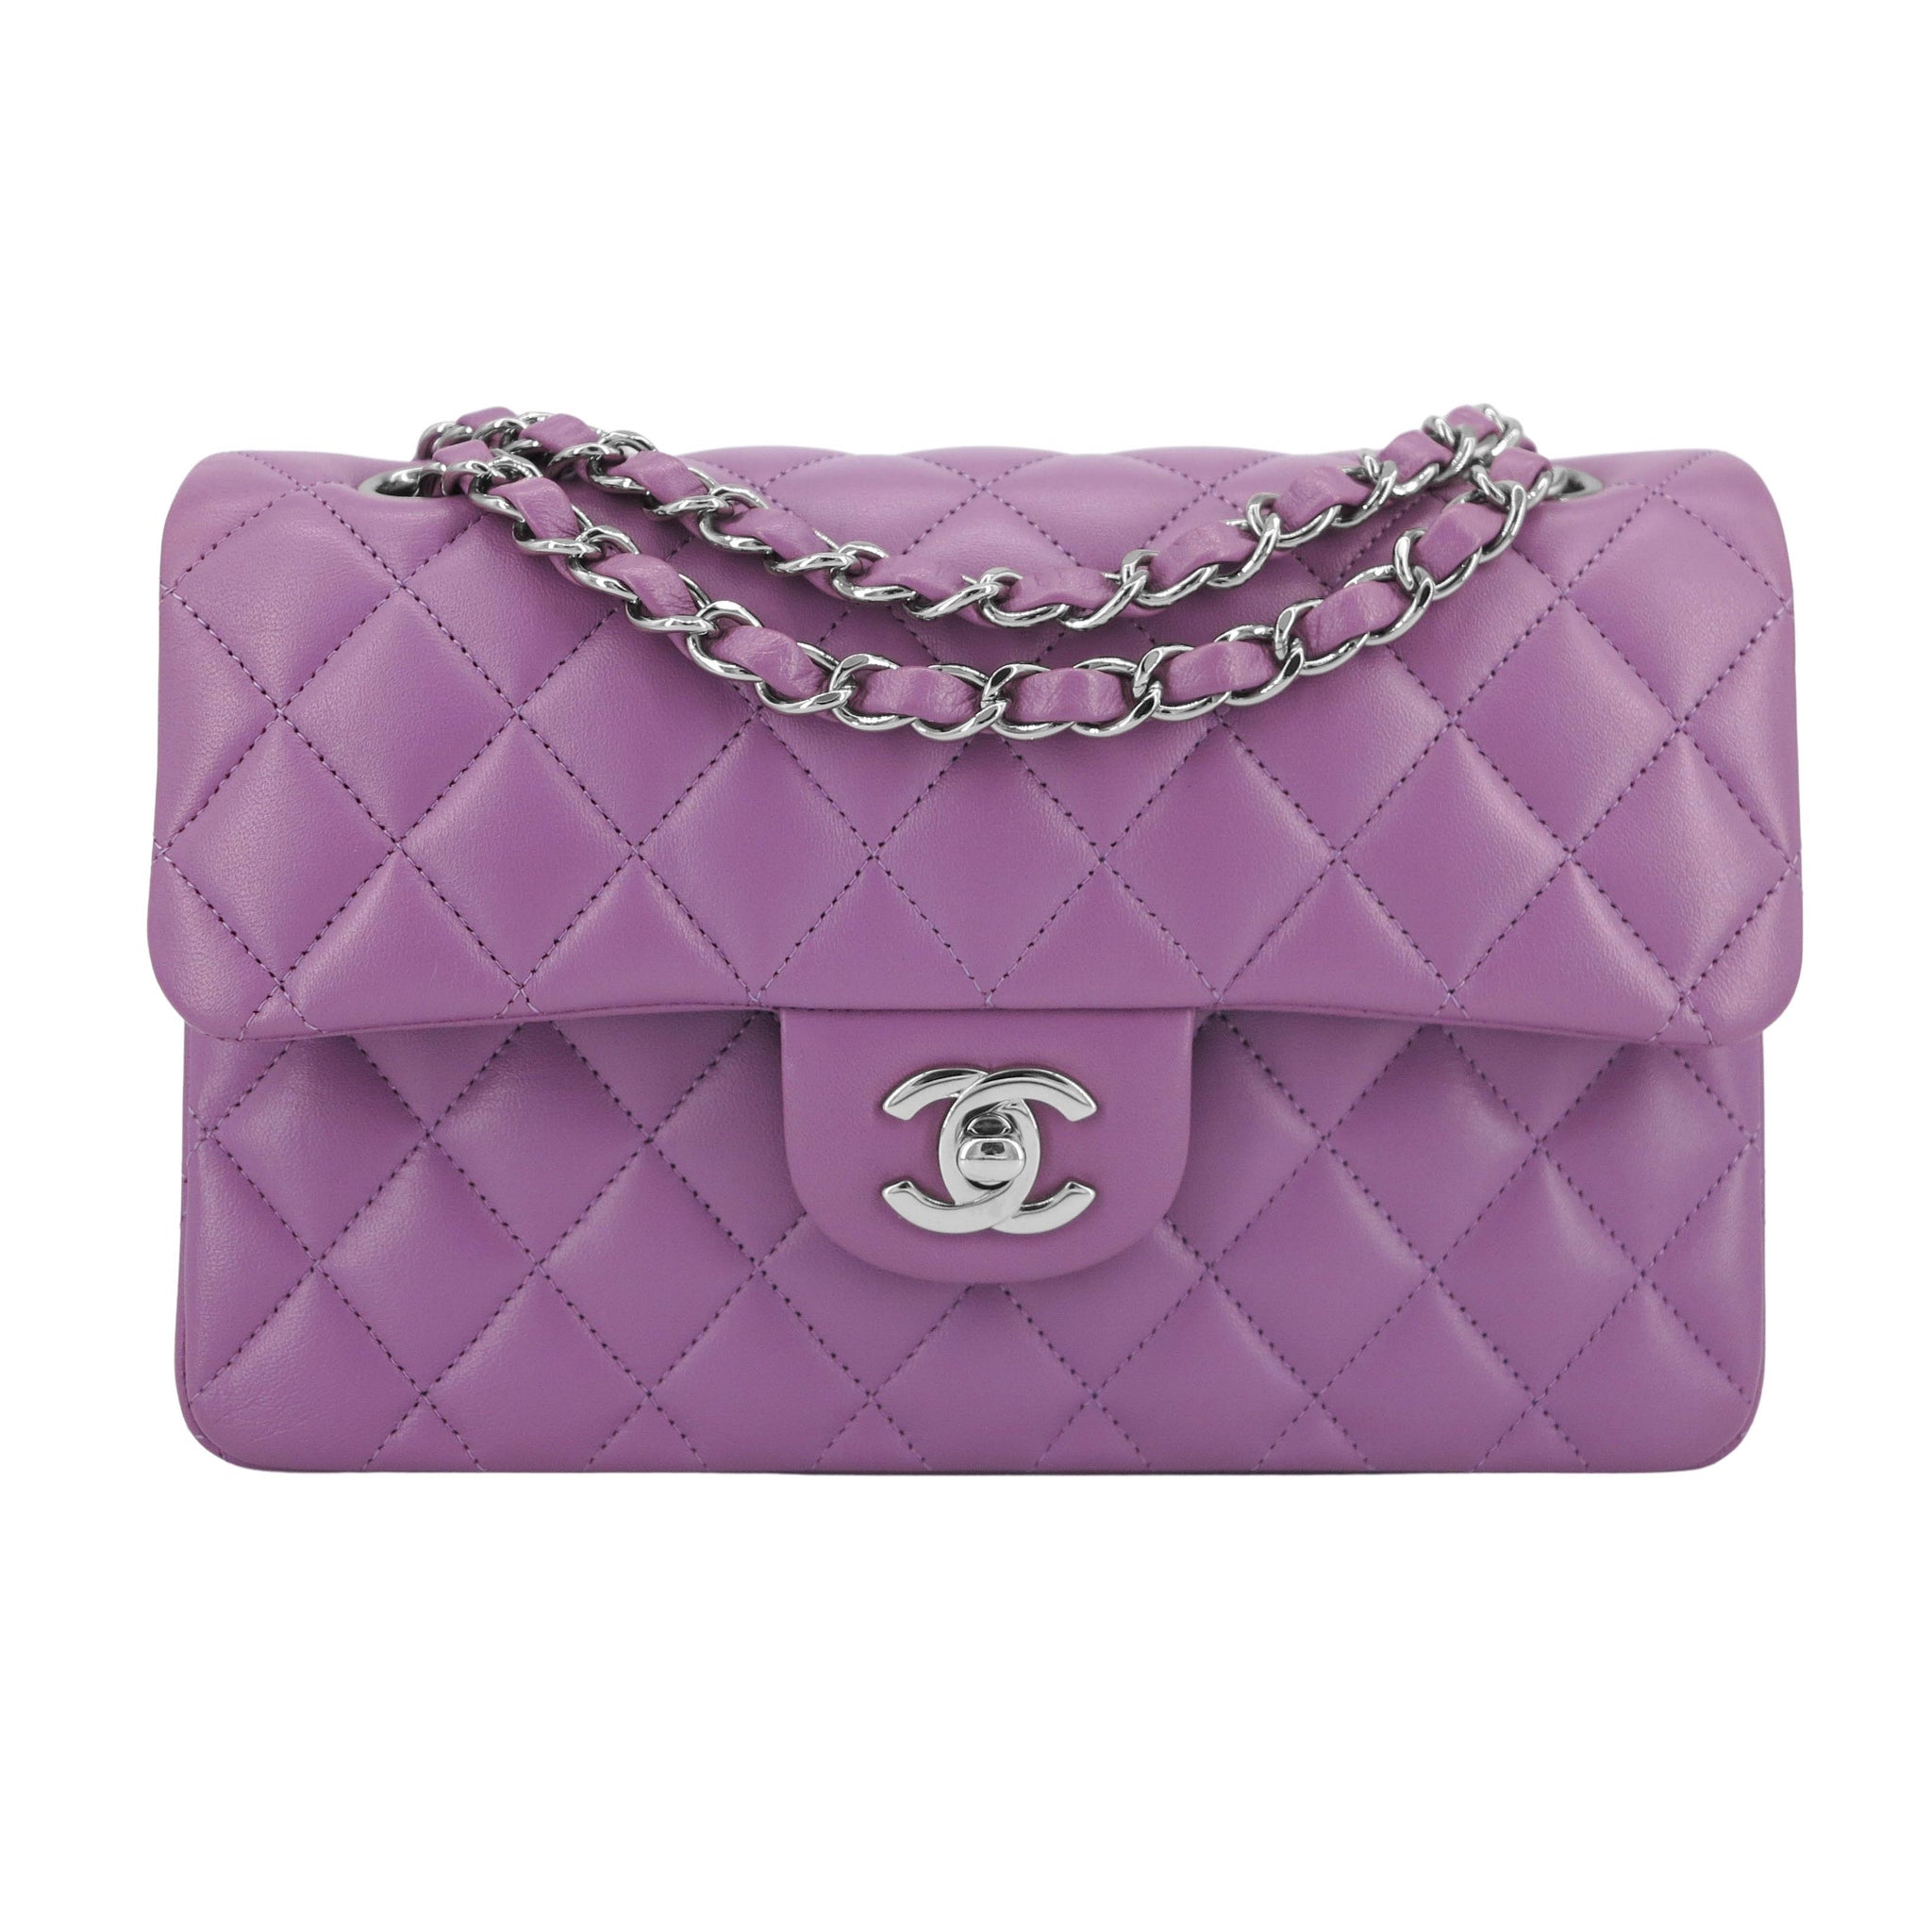 CHANEL Small Classic Double Flap Bag in Purple Lambskin | Dearluxe